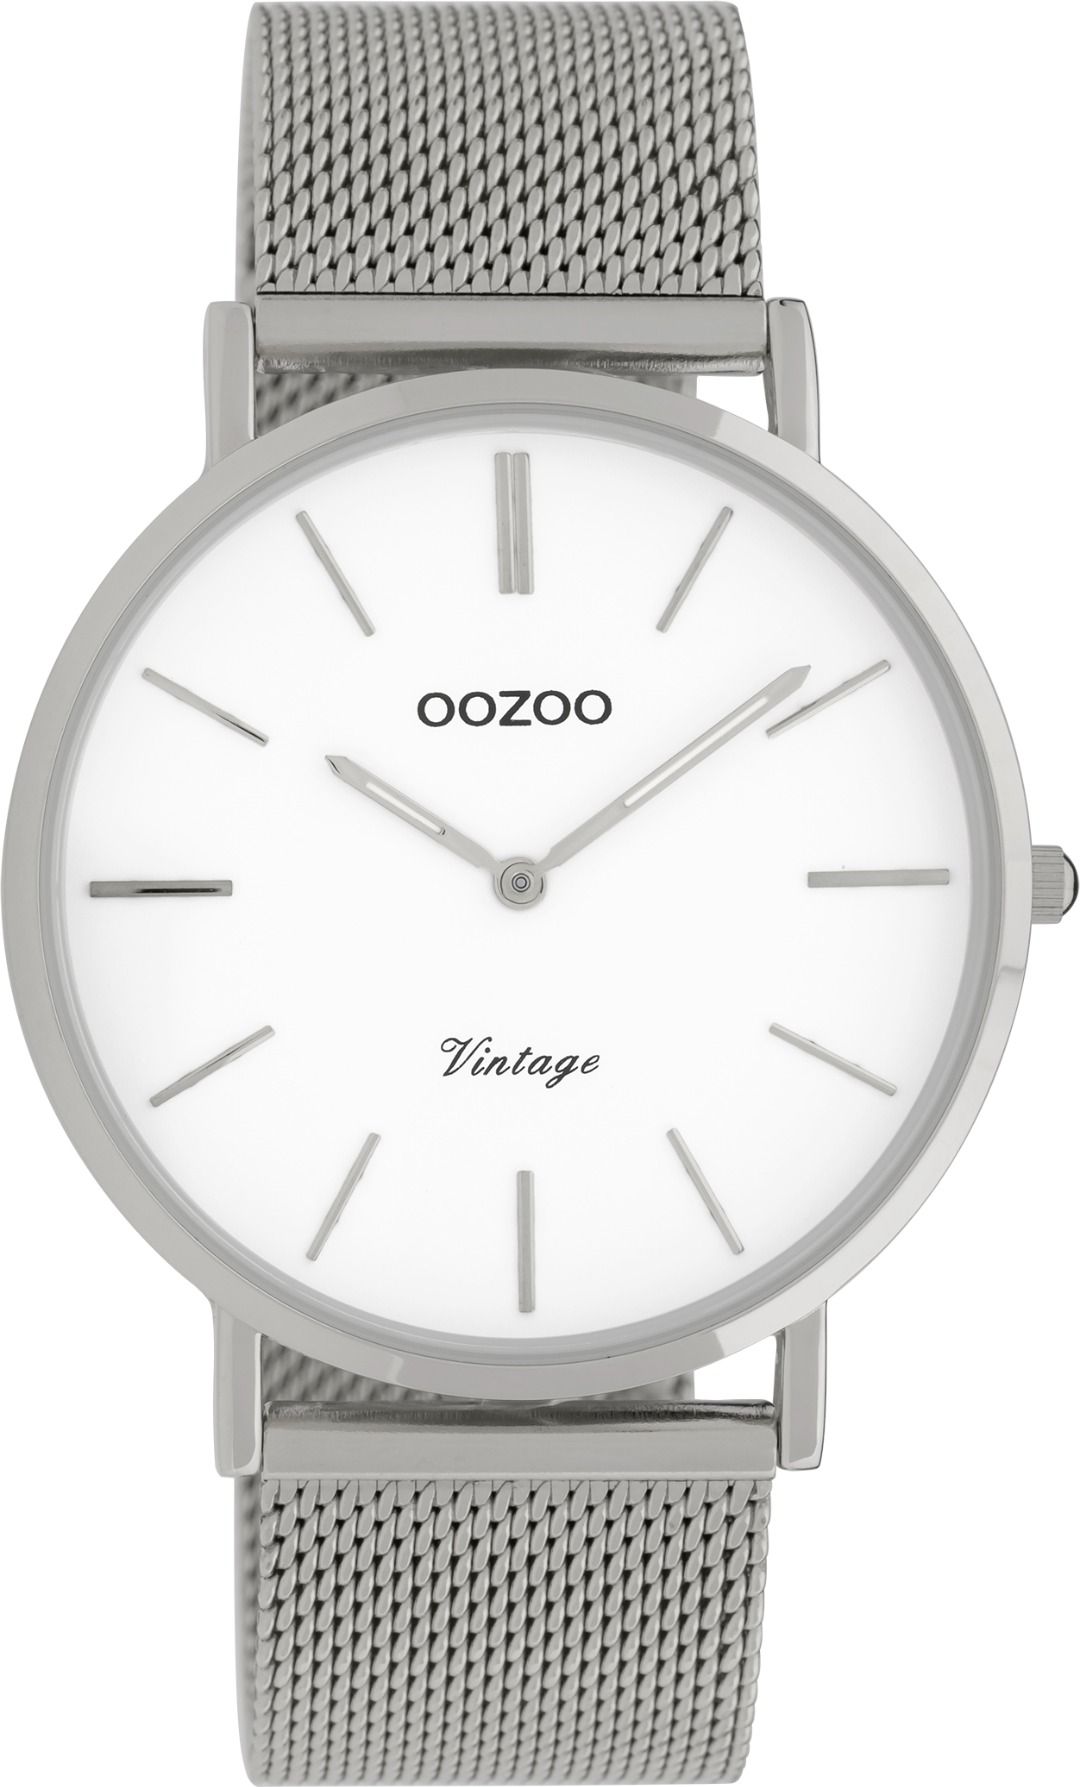 OOZOO Vintage 9901 - 40 mm